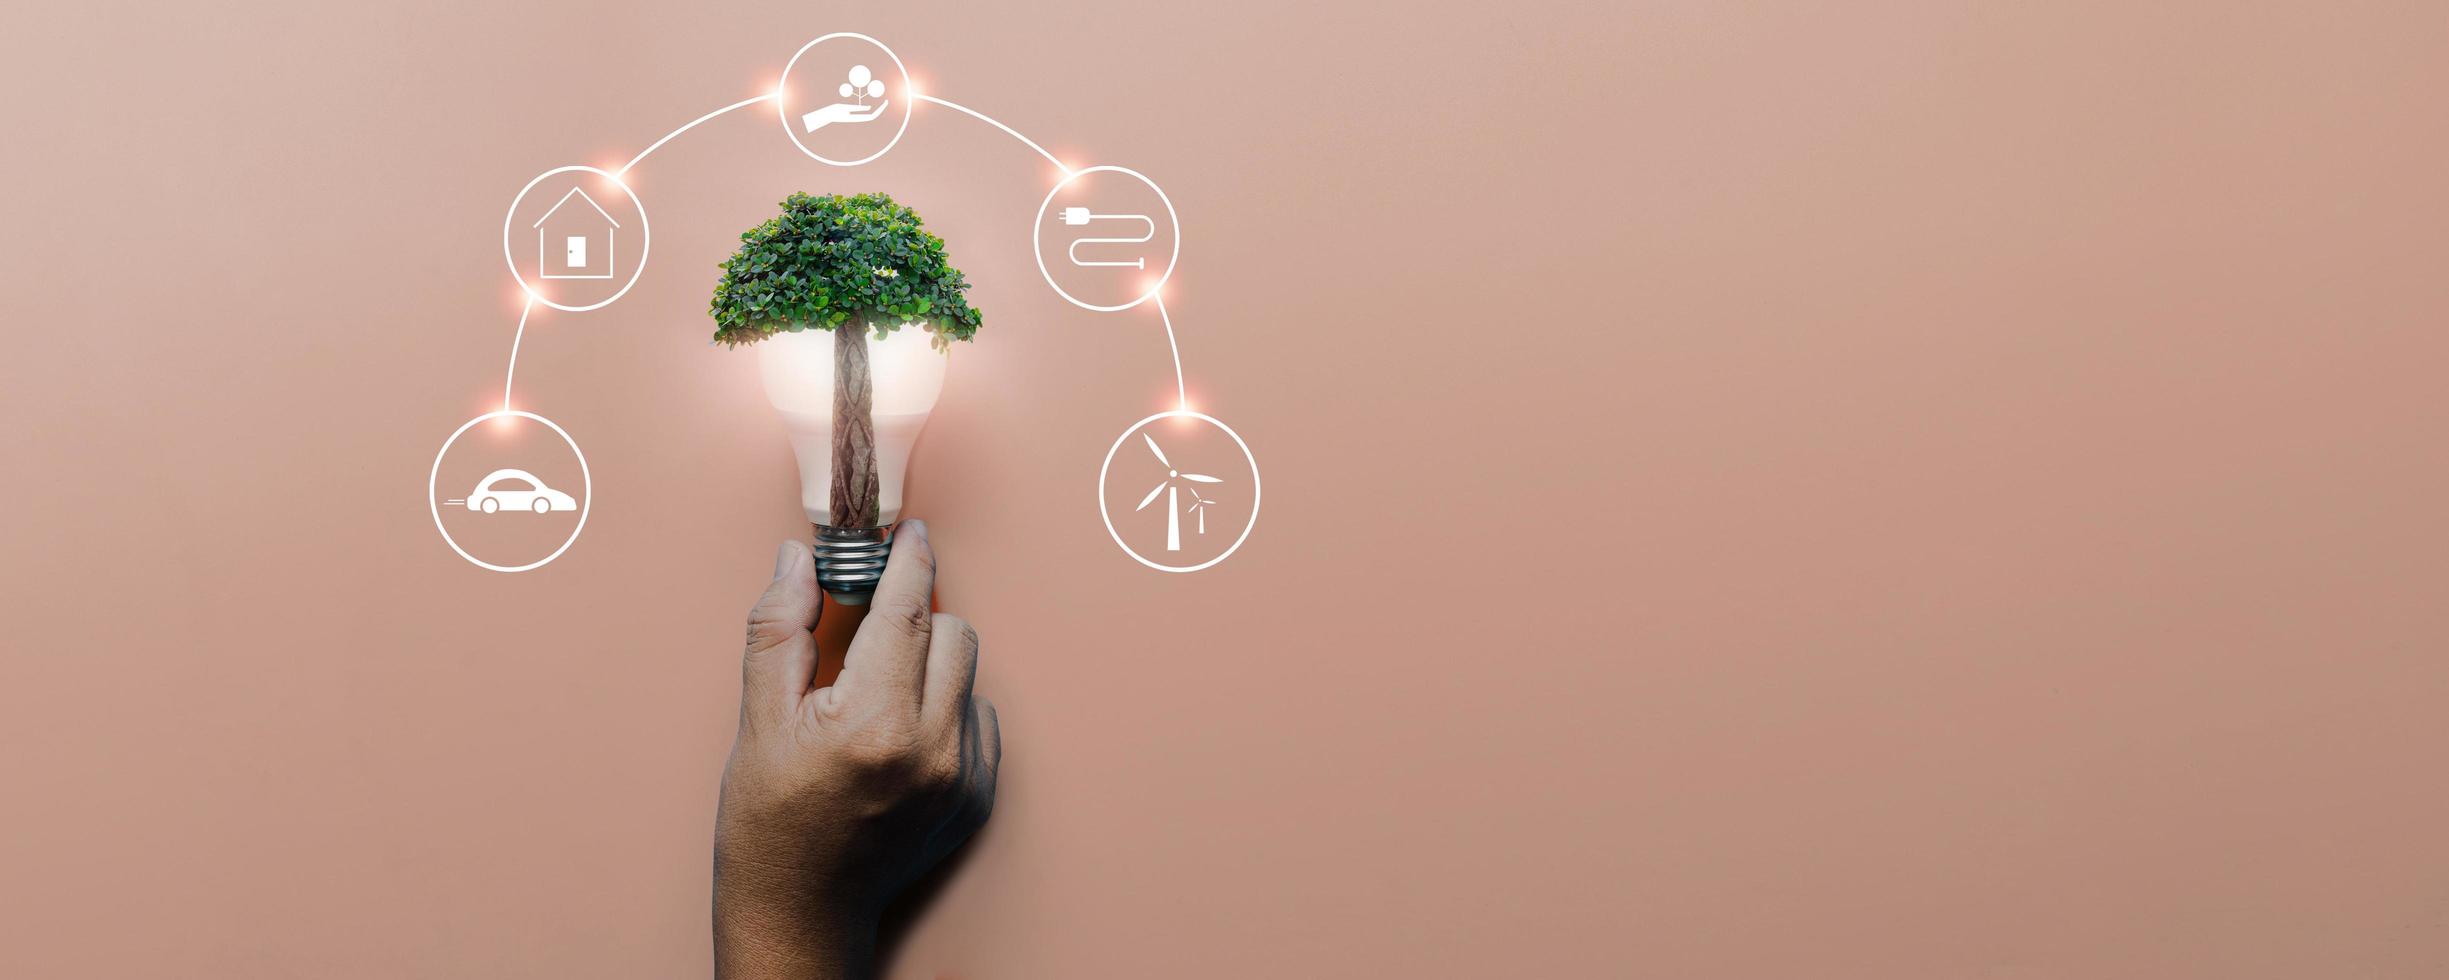 main tenant une ampoule avec un grand arbre sur fond rose avec des icônes sources d'énergie pour l'énergie renouvelable, des cellules solaires, le développement durable. concept d'écologie et d'environnement. photo